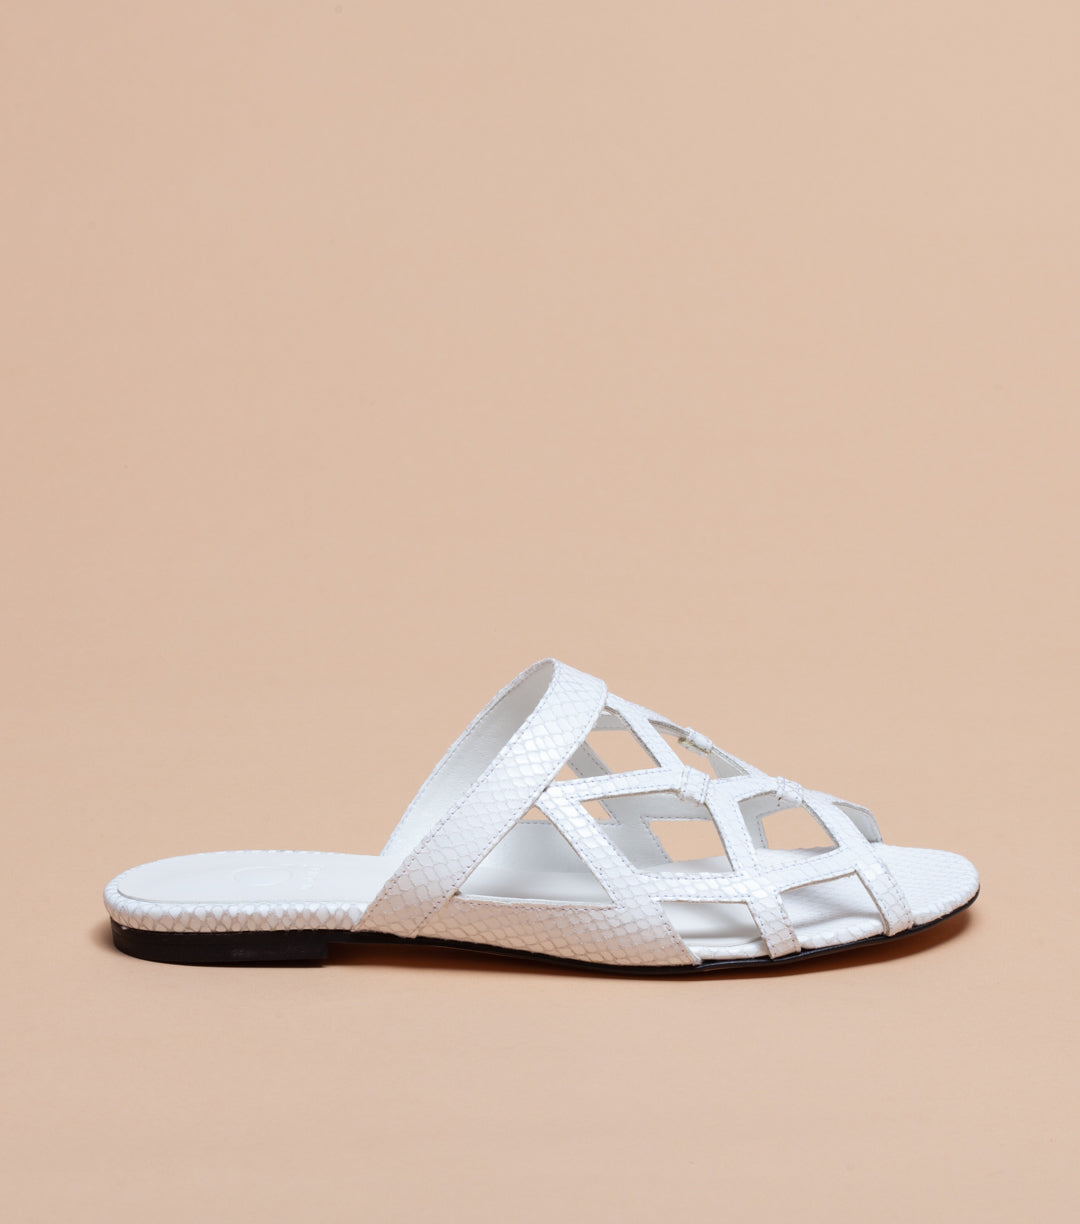 Leela Sandals in White